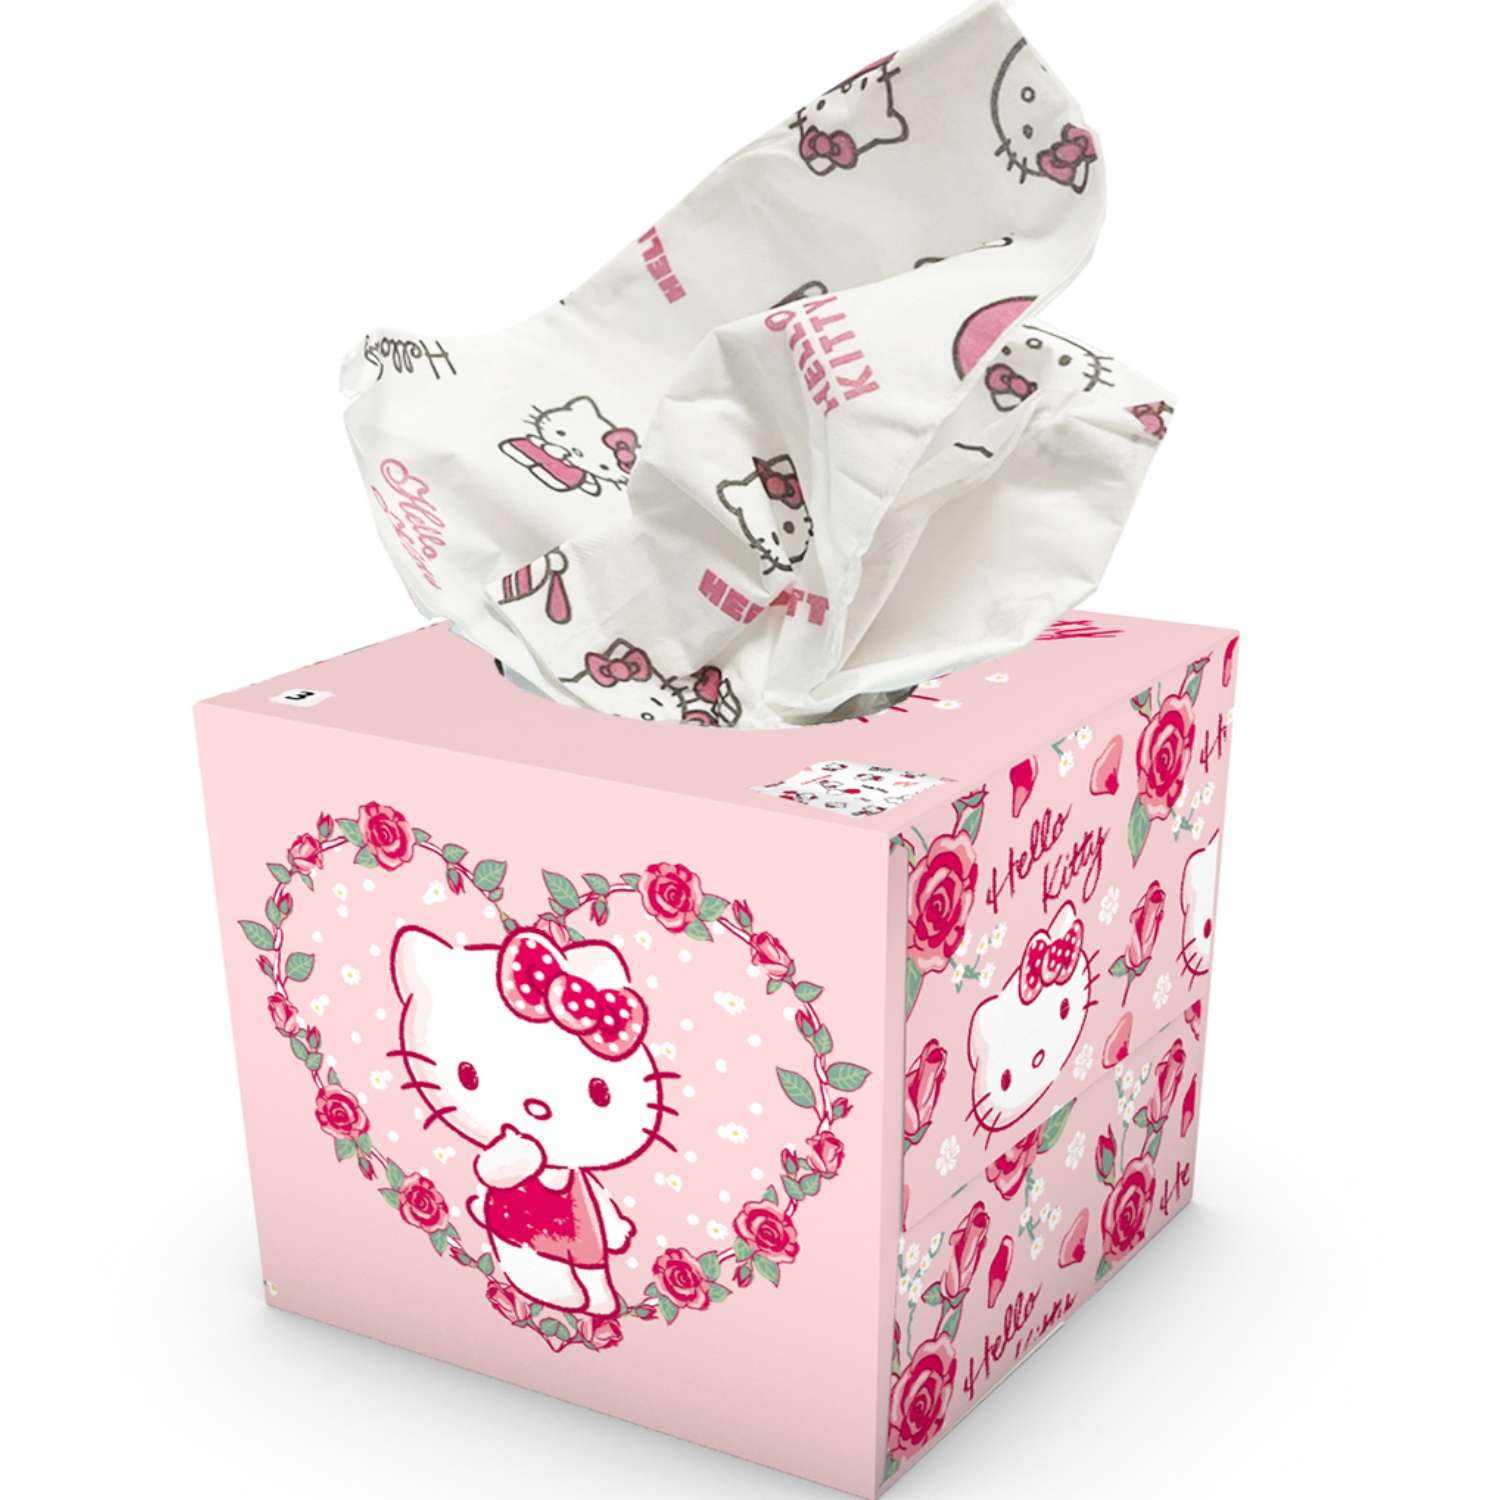 Салфетки бумажные выдергушки World cart Hello Kitty с рисунком 3 слоя 56 штук в упаковке - фото 1